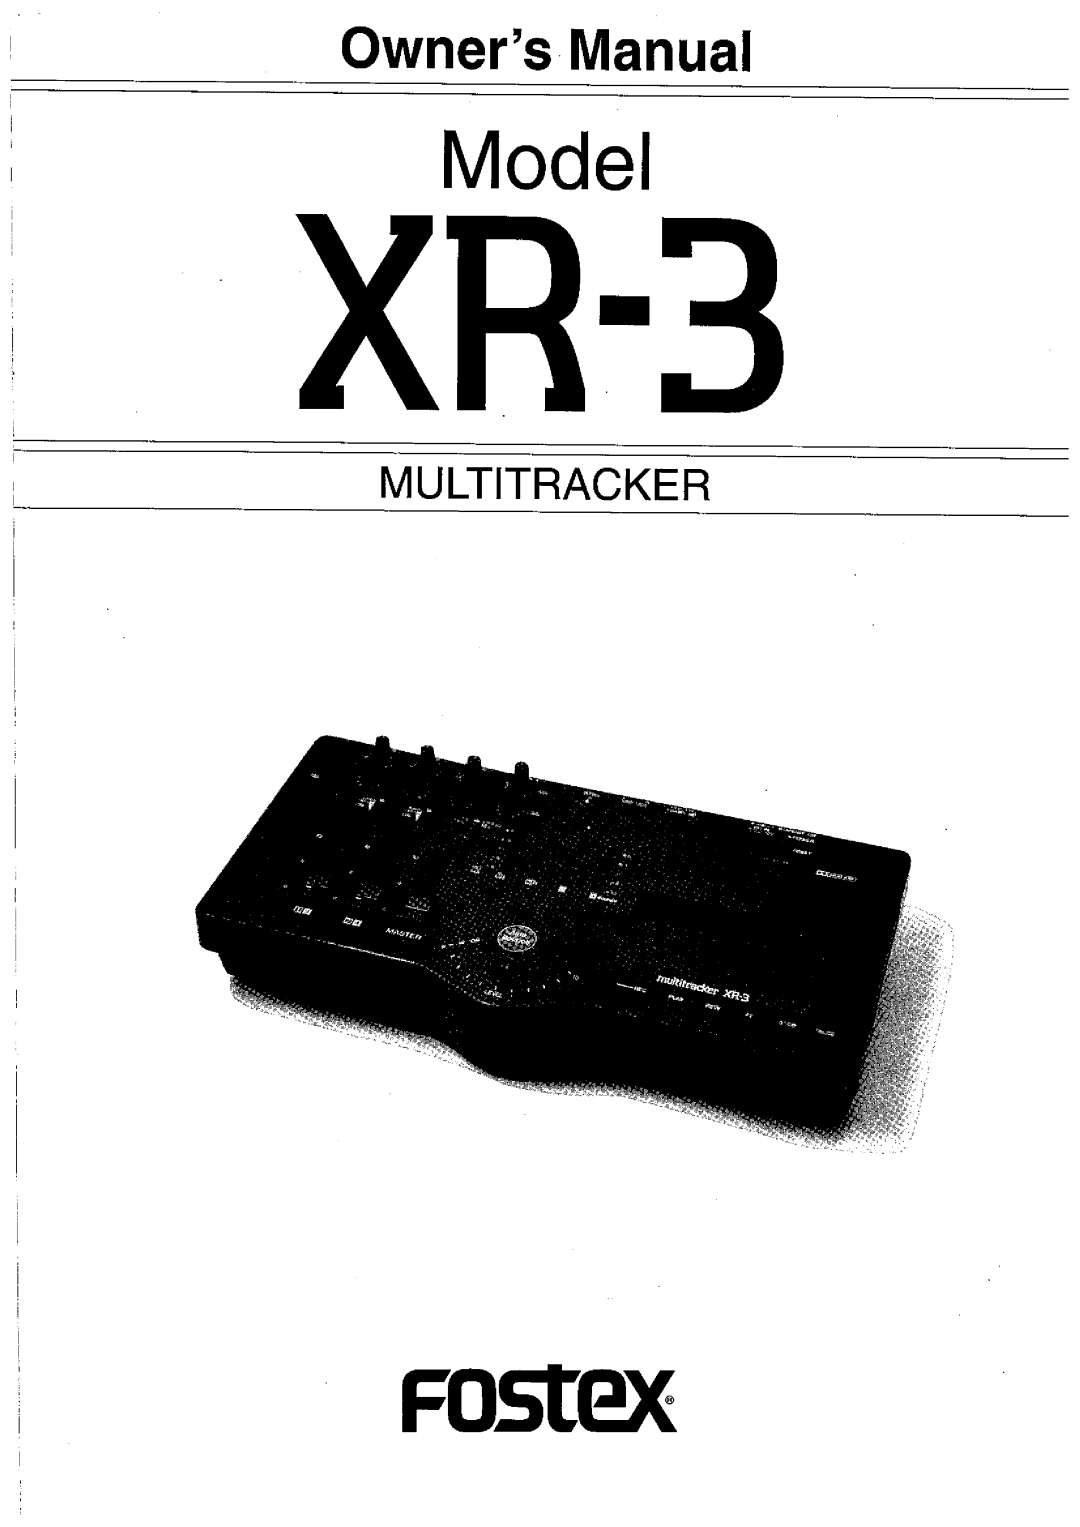 Fostex XR-3 manual 